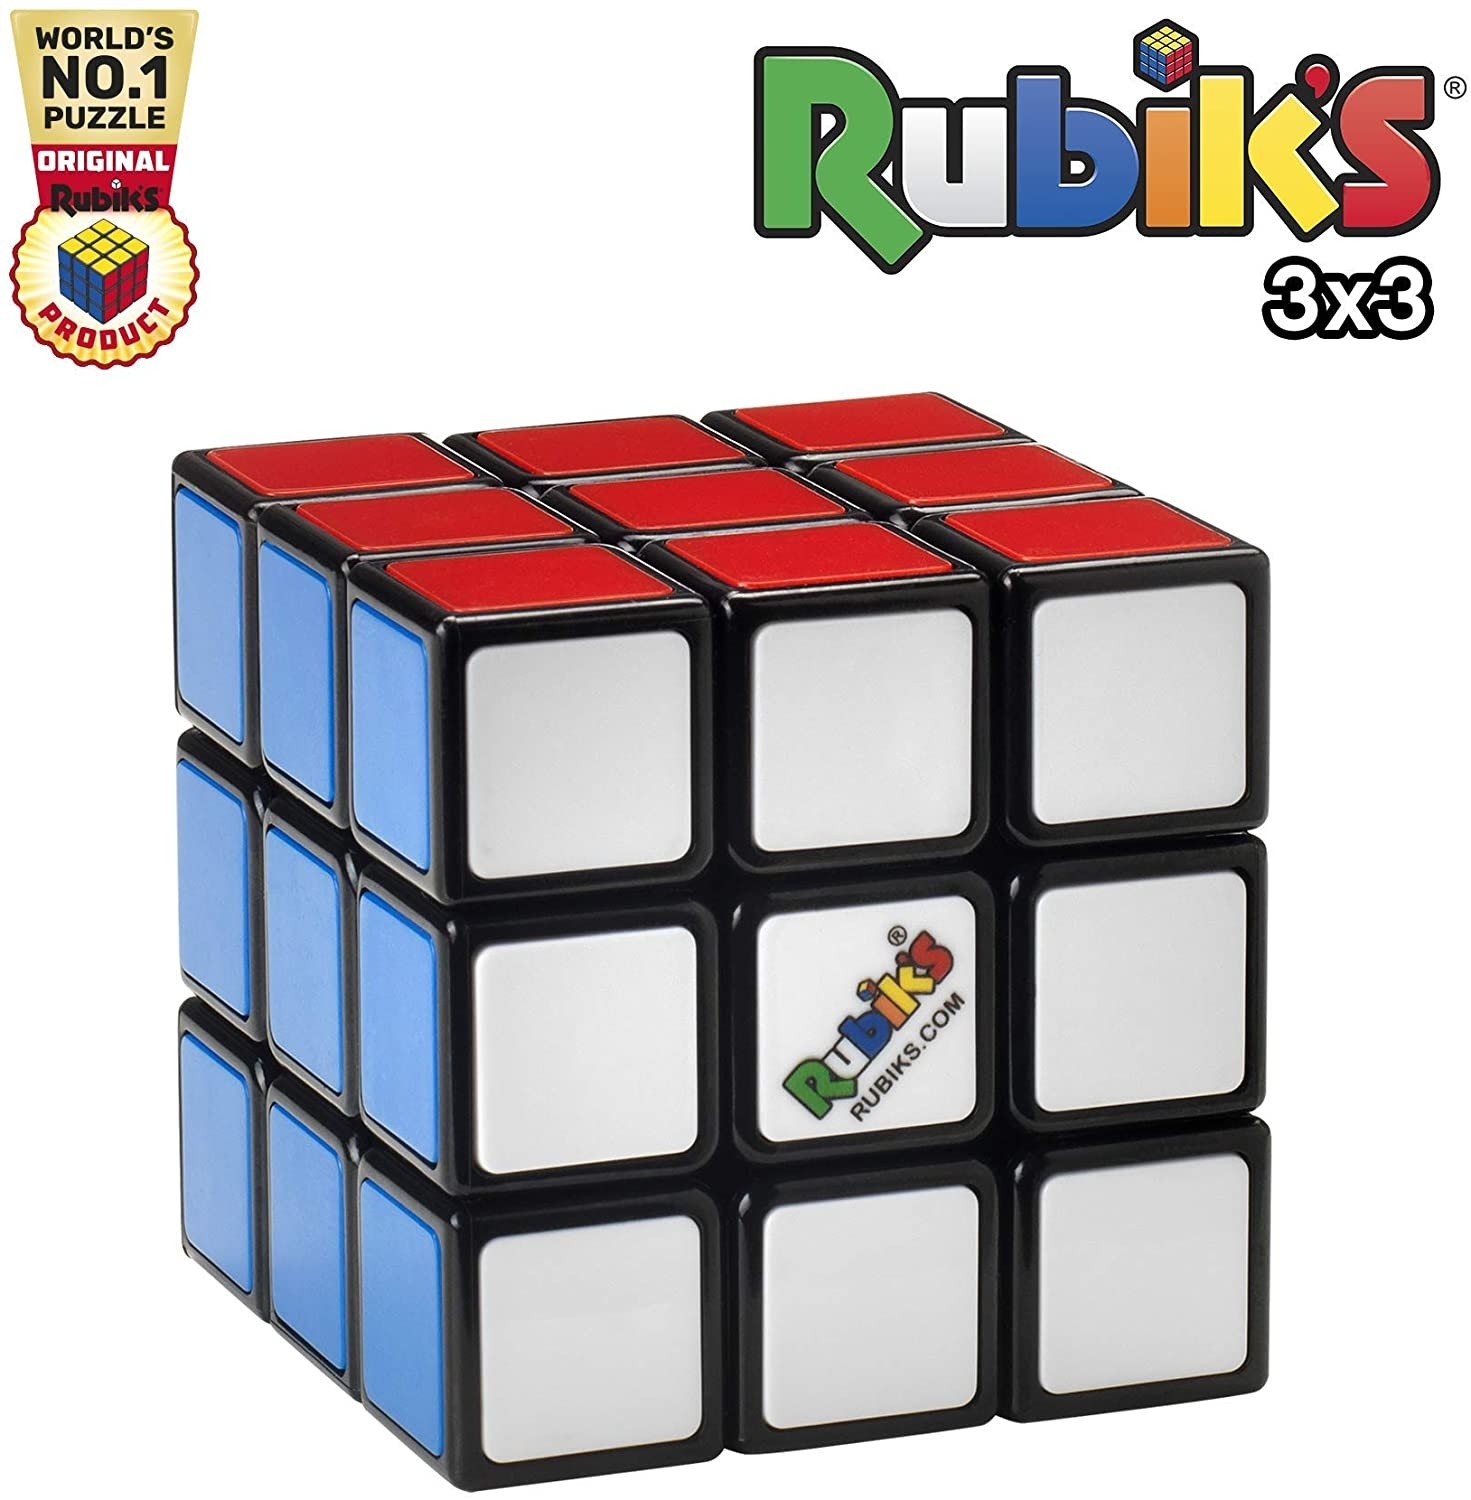 CUBO DI RUBIK'S 3X3 - 72101